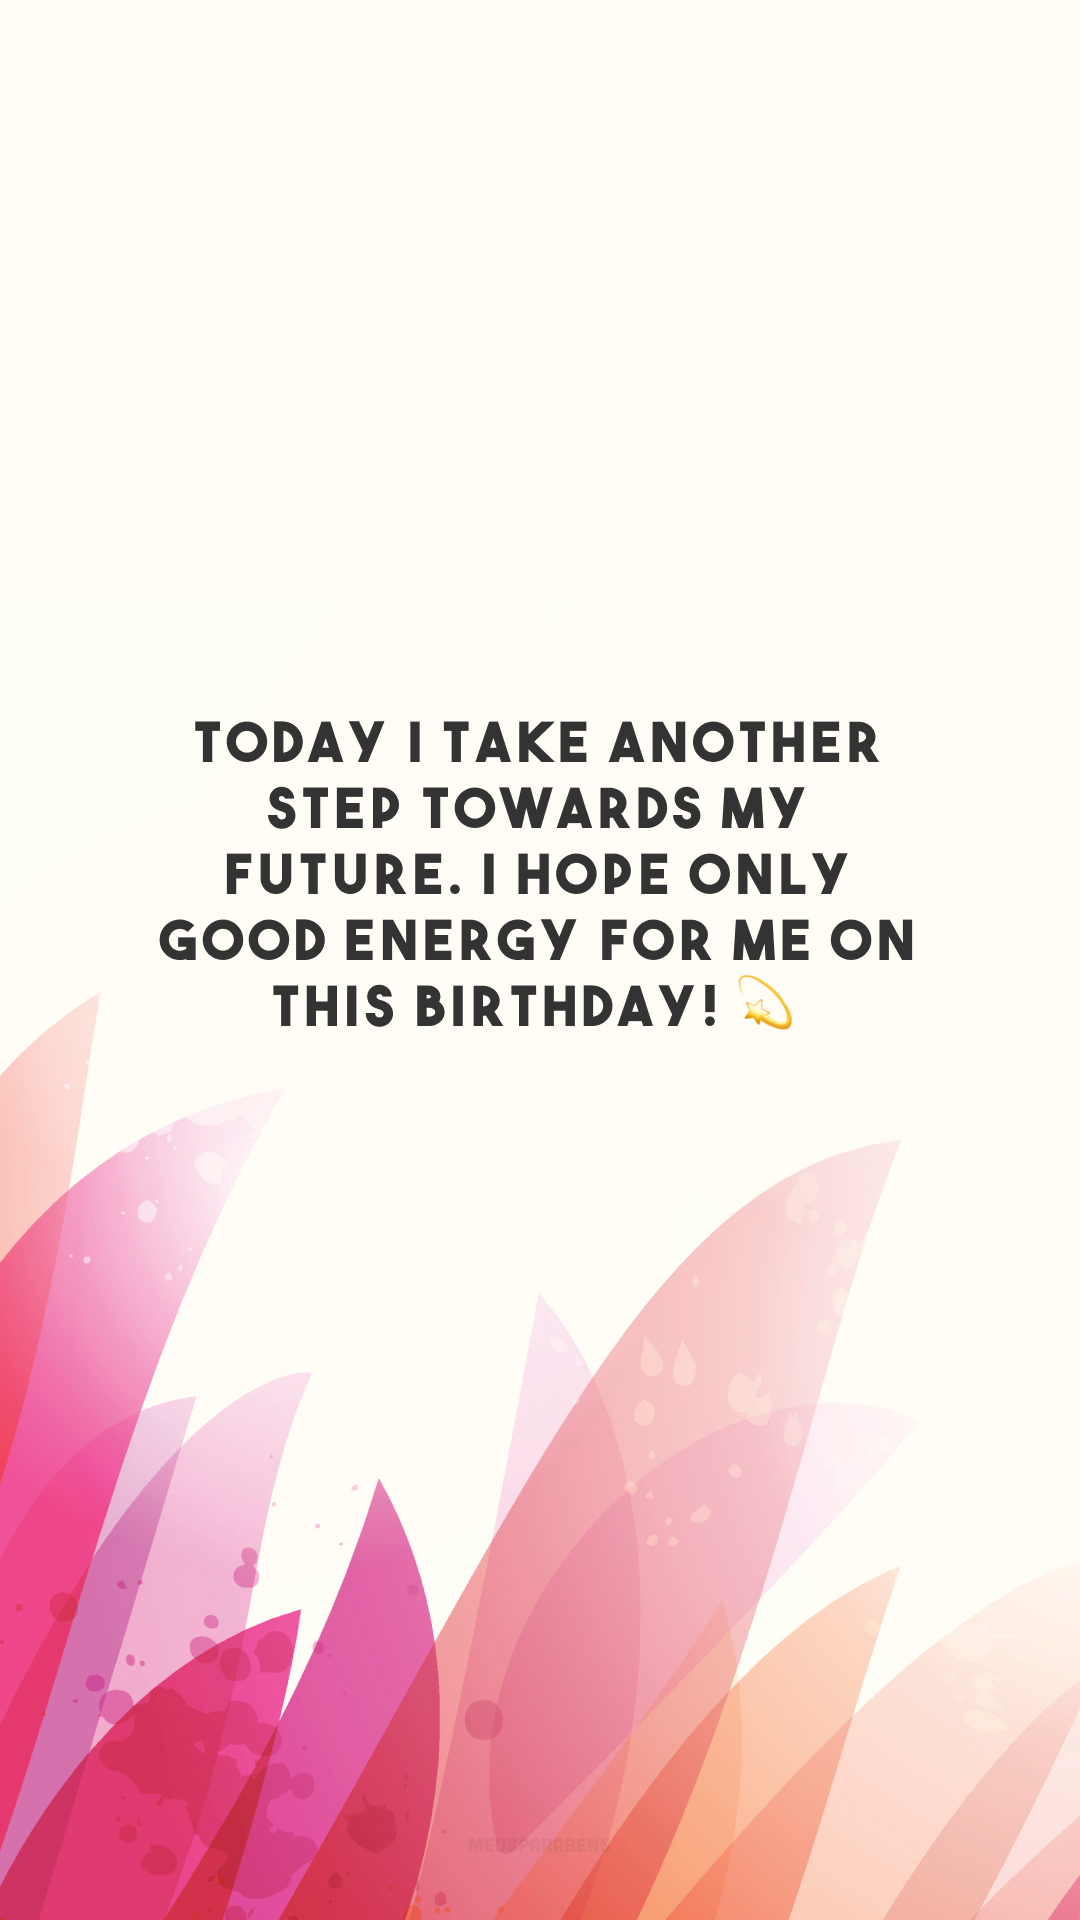 Today I take another step towards my future. I hope only good energy for me on this birthday! 💫

<p>(Hoje subo mais um degrau em direção ao meu futuro. Apenas boas energias pra mim neste aniversário!)<p>